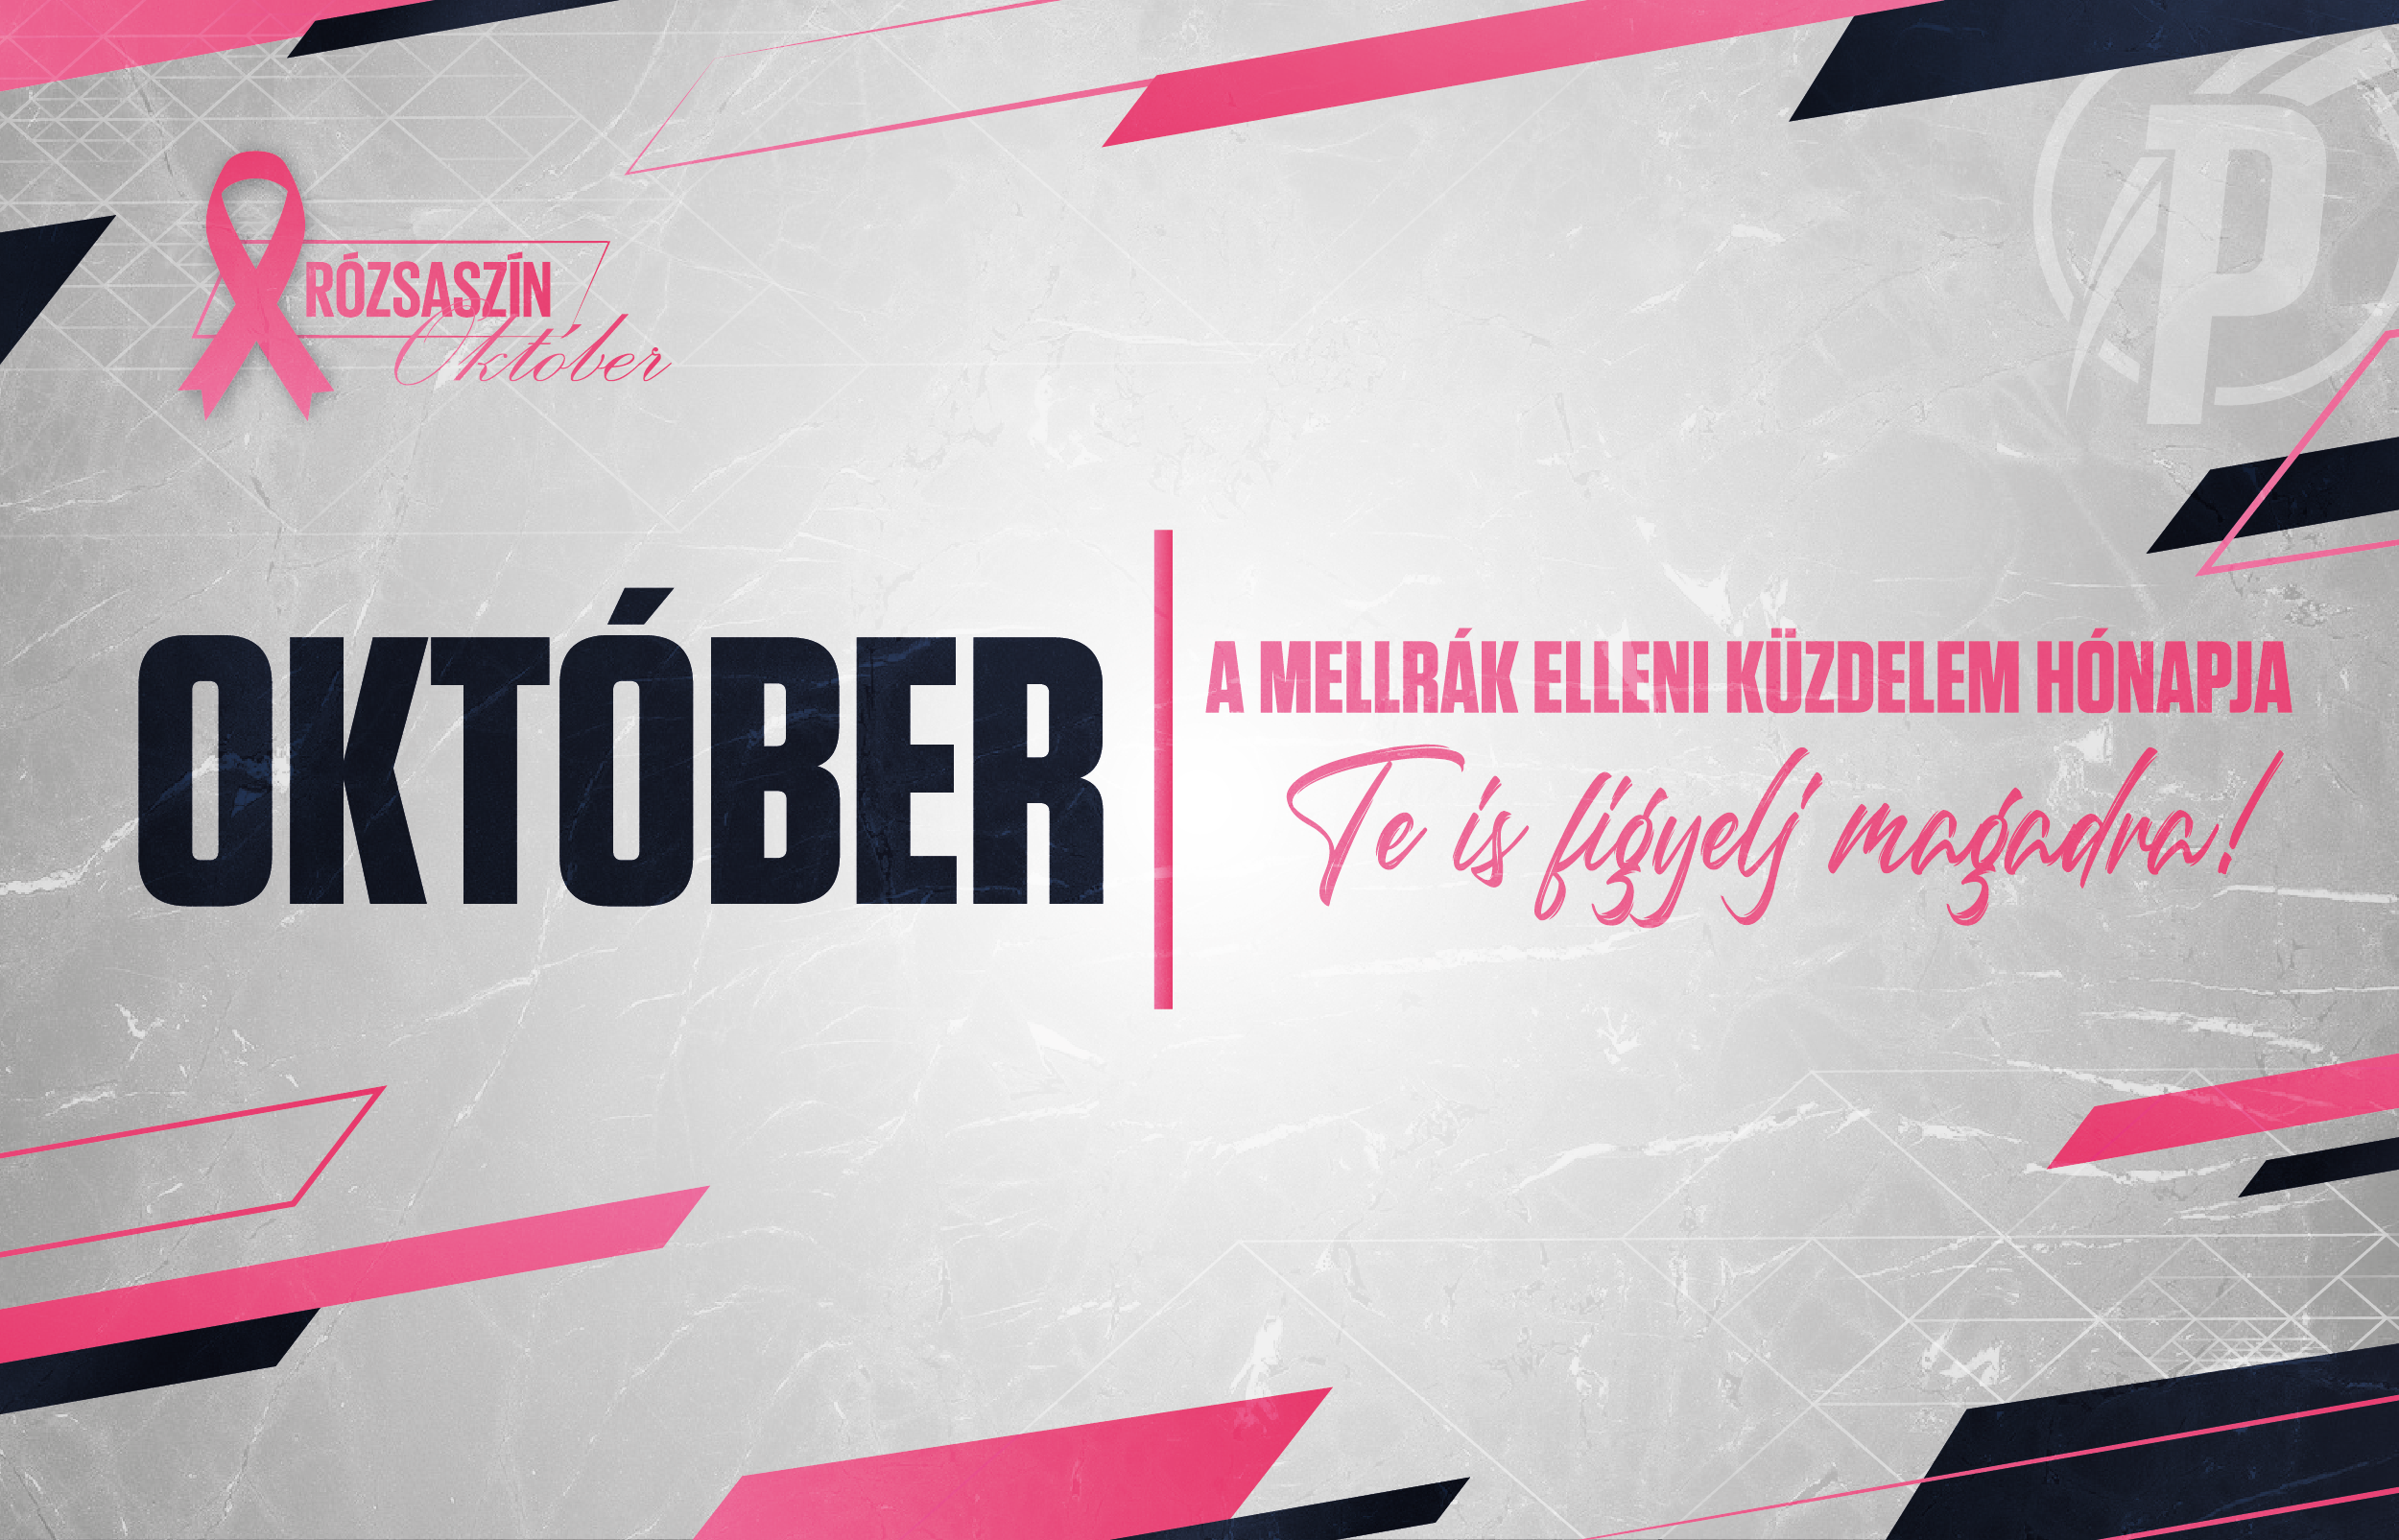 Október, a mellrák elleni küzdelem hónapja